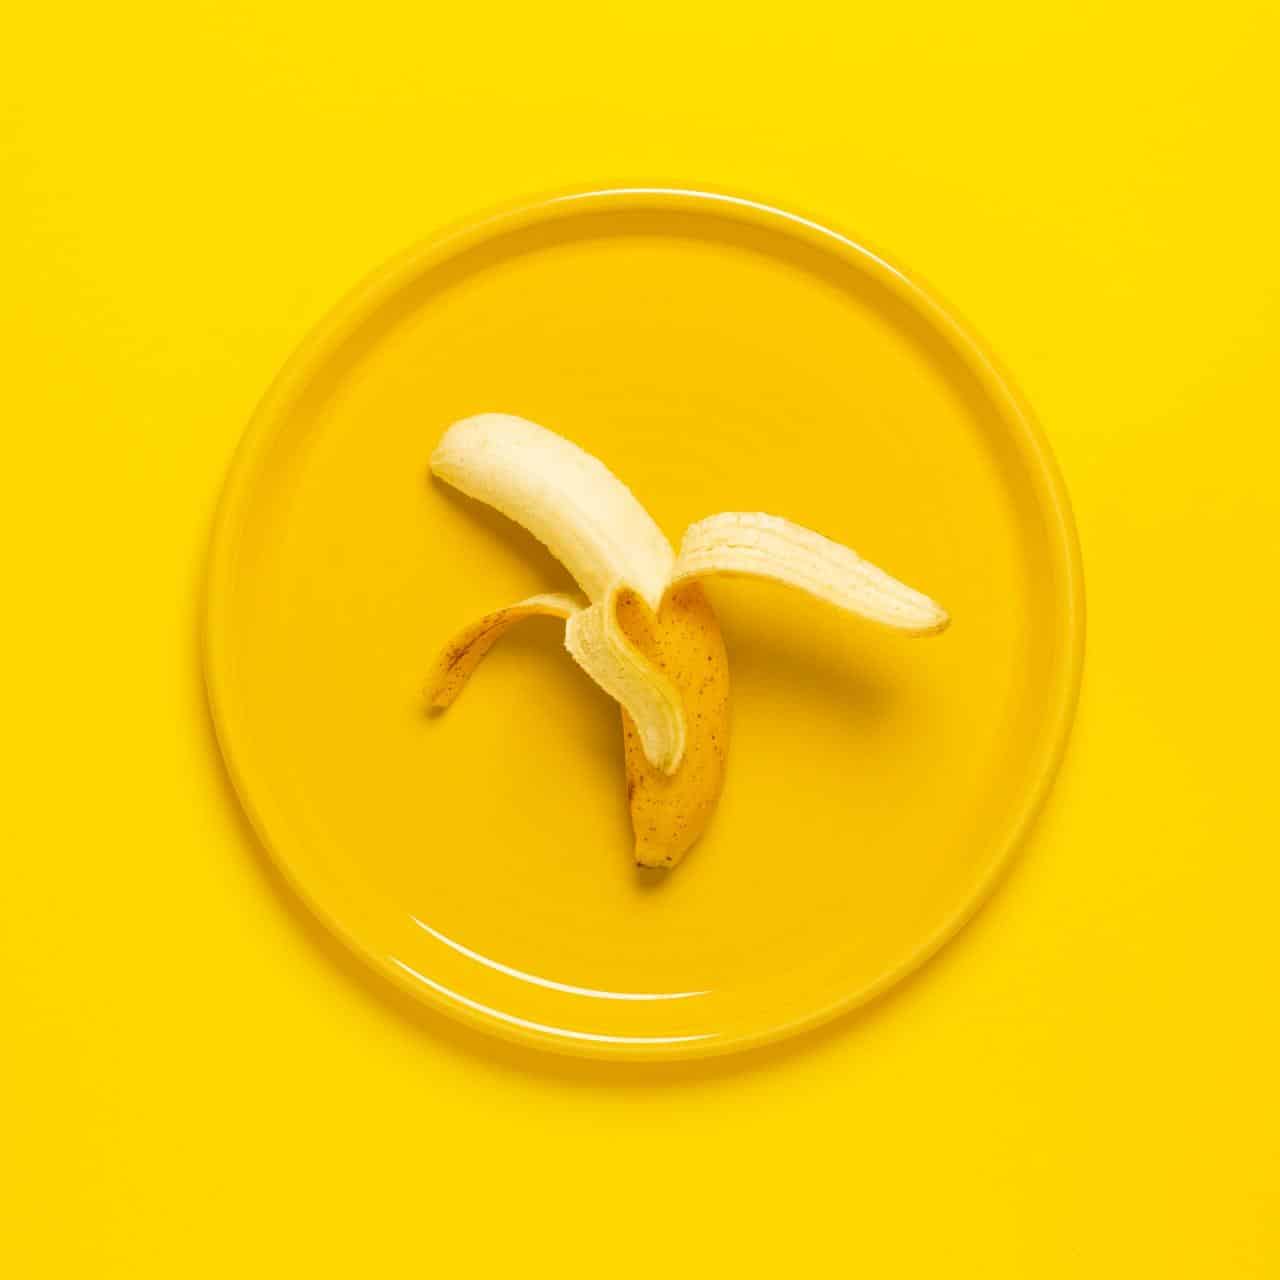 banan skalad på en gul tallrik